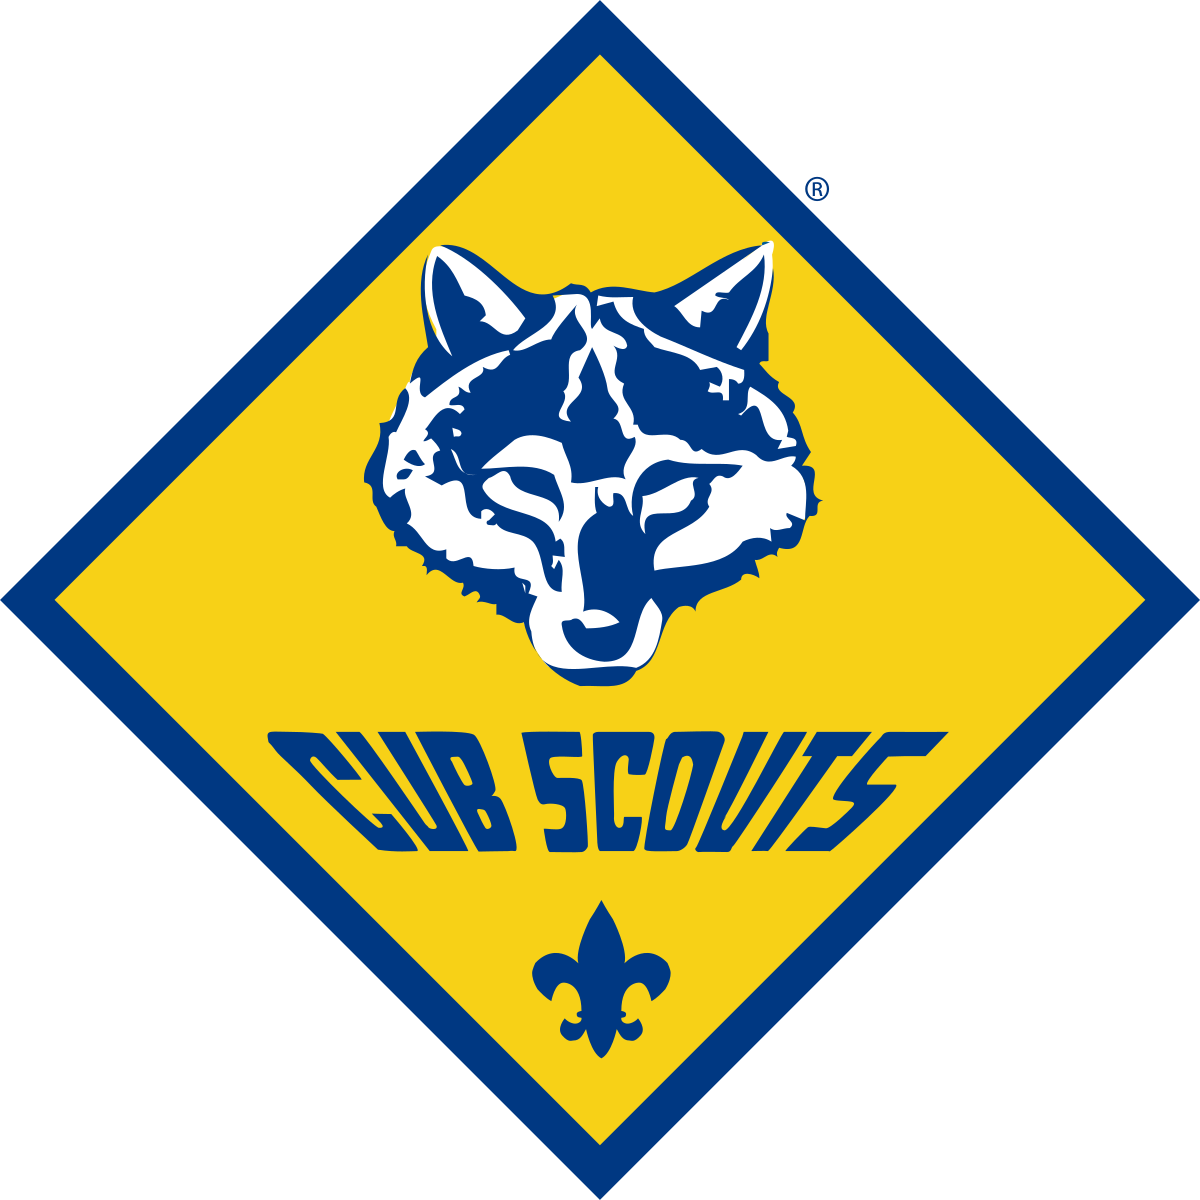 Cub Scouts Pack 3